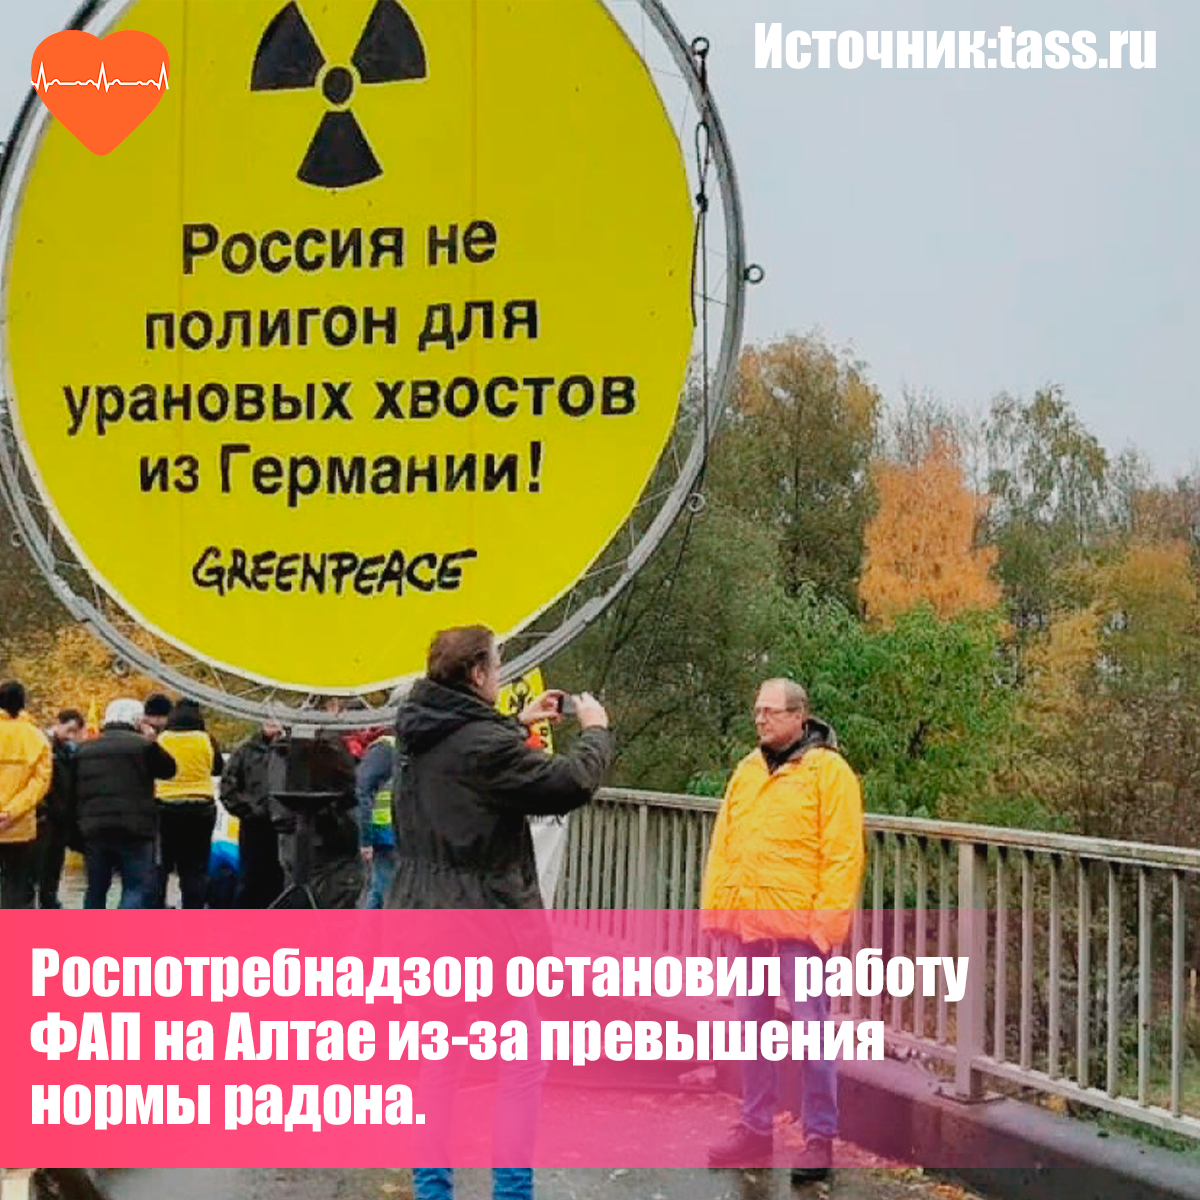 Против таких "подарков" даже сами  европейские экоактивисты. Но наши власти не видят в возе ядерных отходов в свою страну никакой опасности.